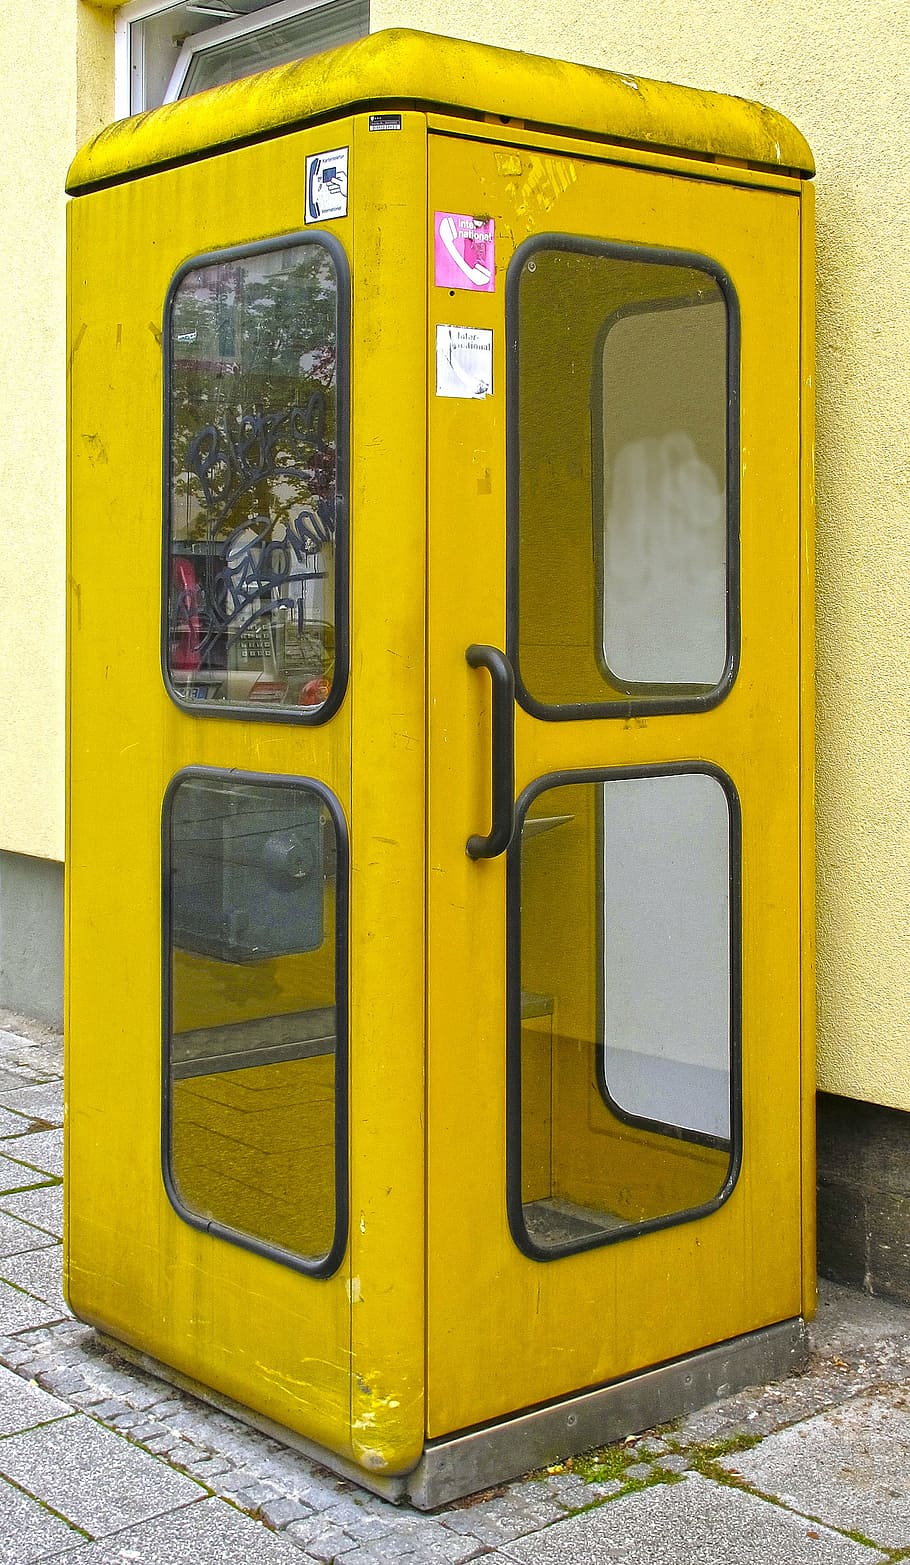 cabine telefônica, amarelo, antiquado, postar, casa telefônica, telekom, historicamente, telefone público, velho, ninguém